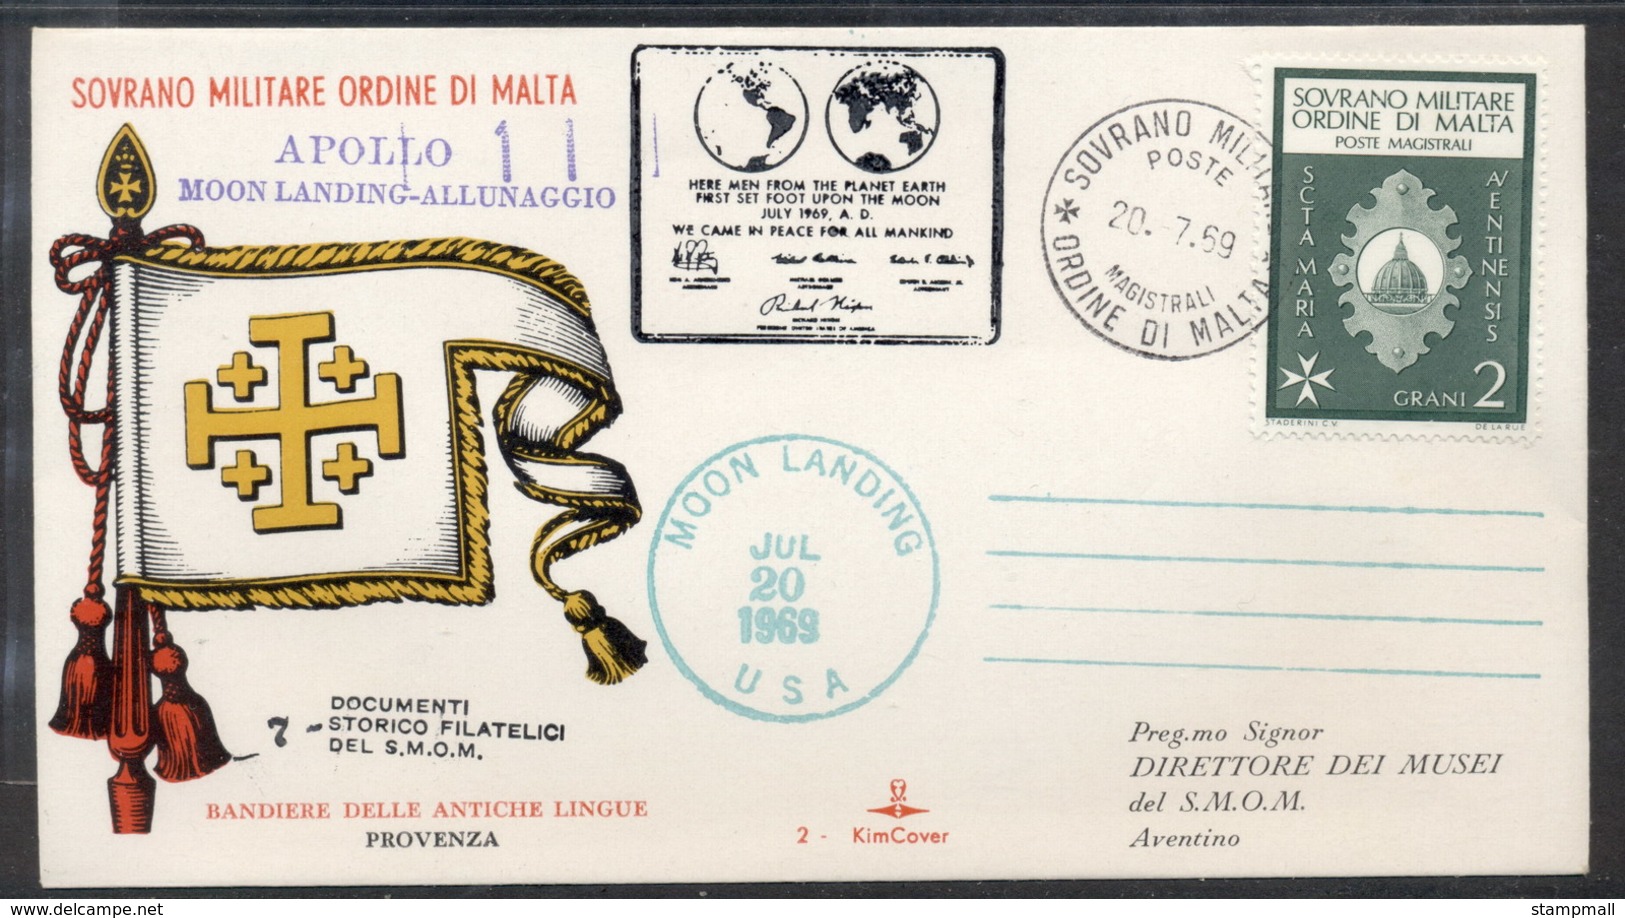 Malta 1969 Sovereign Military Order Apollo 11 Moon Landing FDC - Malte (Ordre De)